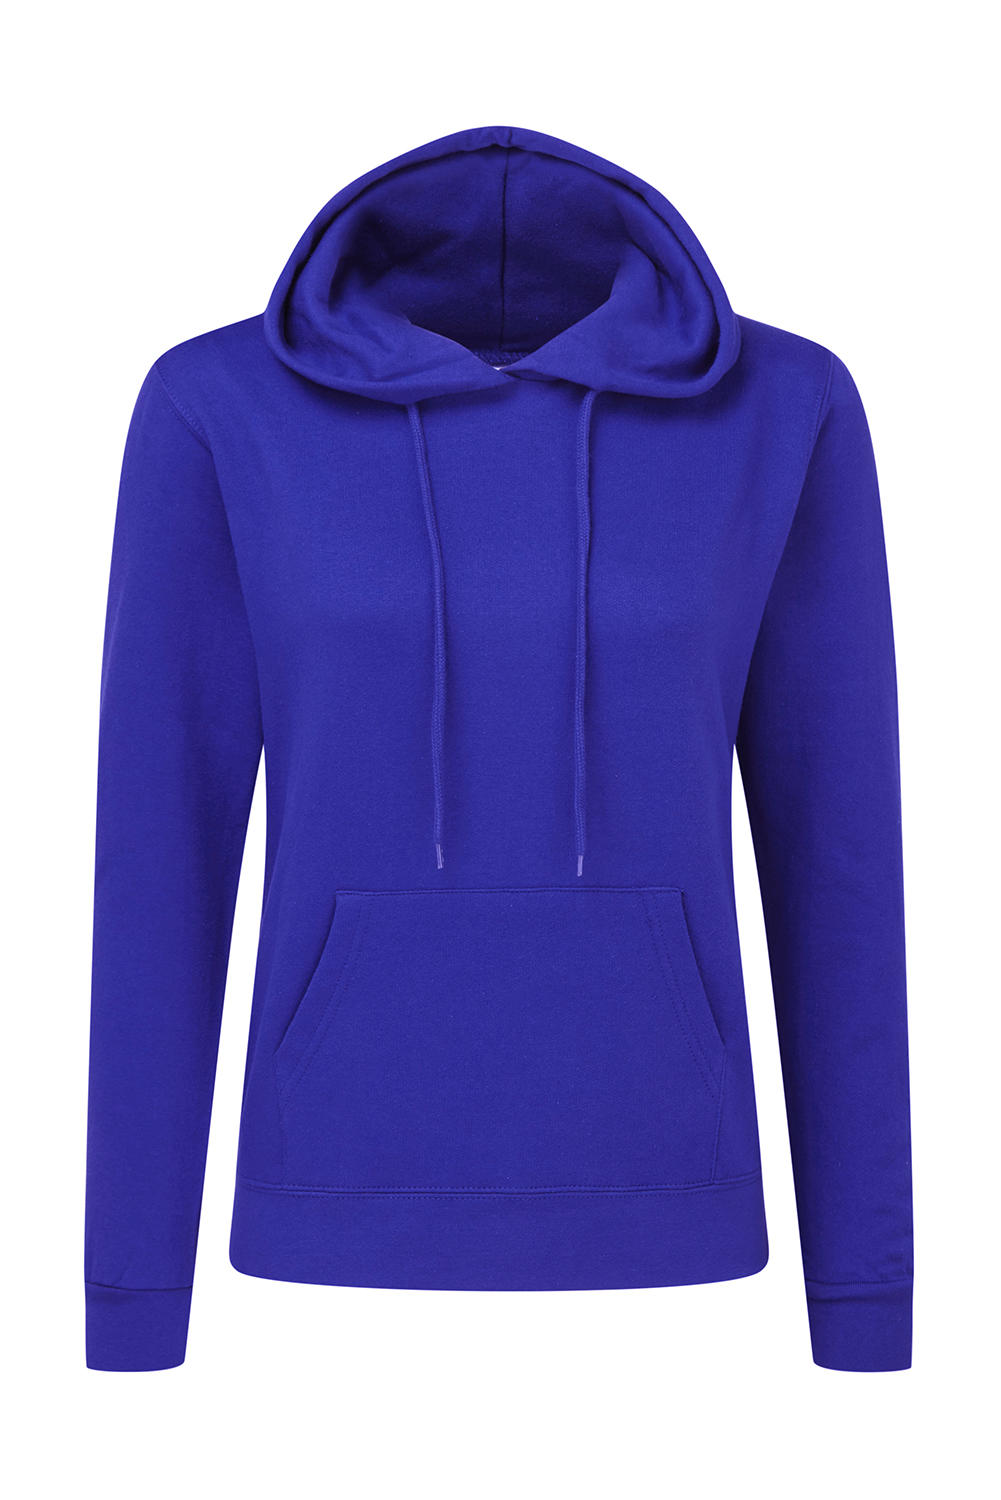  Ladies Hooded Sweatshirt in Farbe Royal Blue